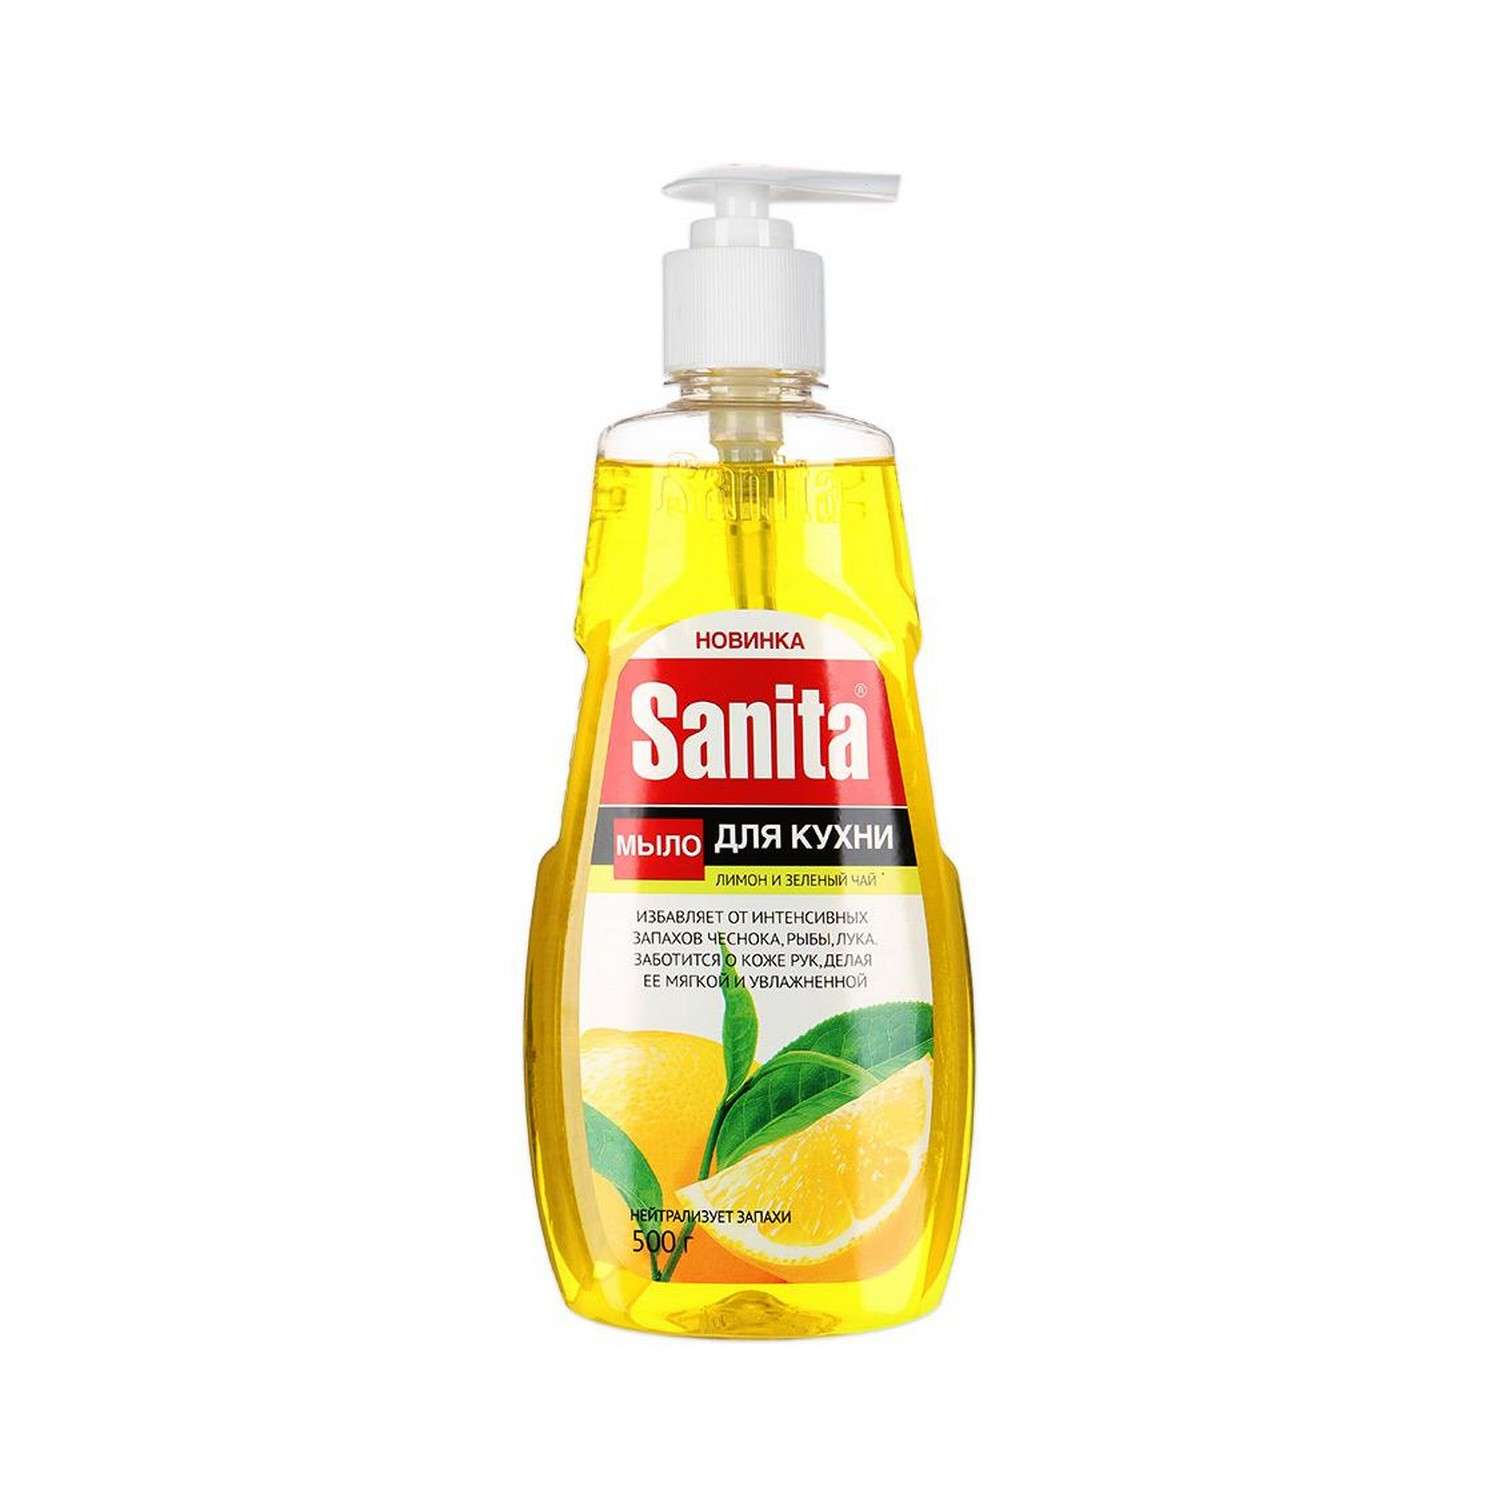 Жидкое мыло для рук Sanita Кухонное Лимон и зеленый чай 500г - фото 1